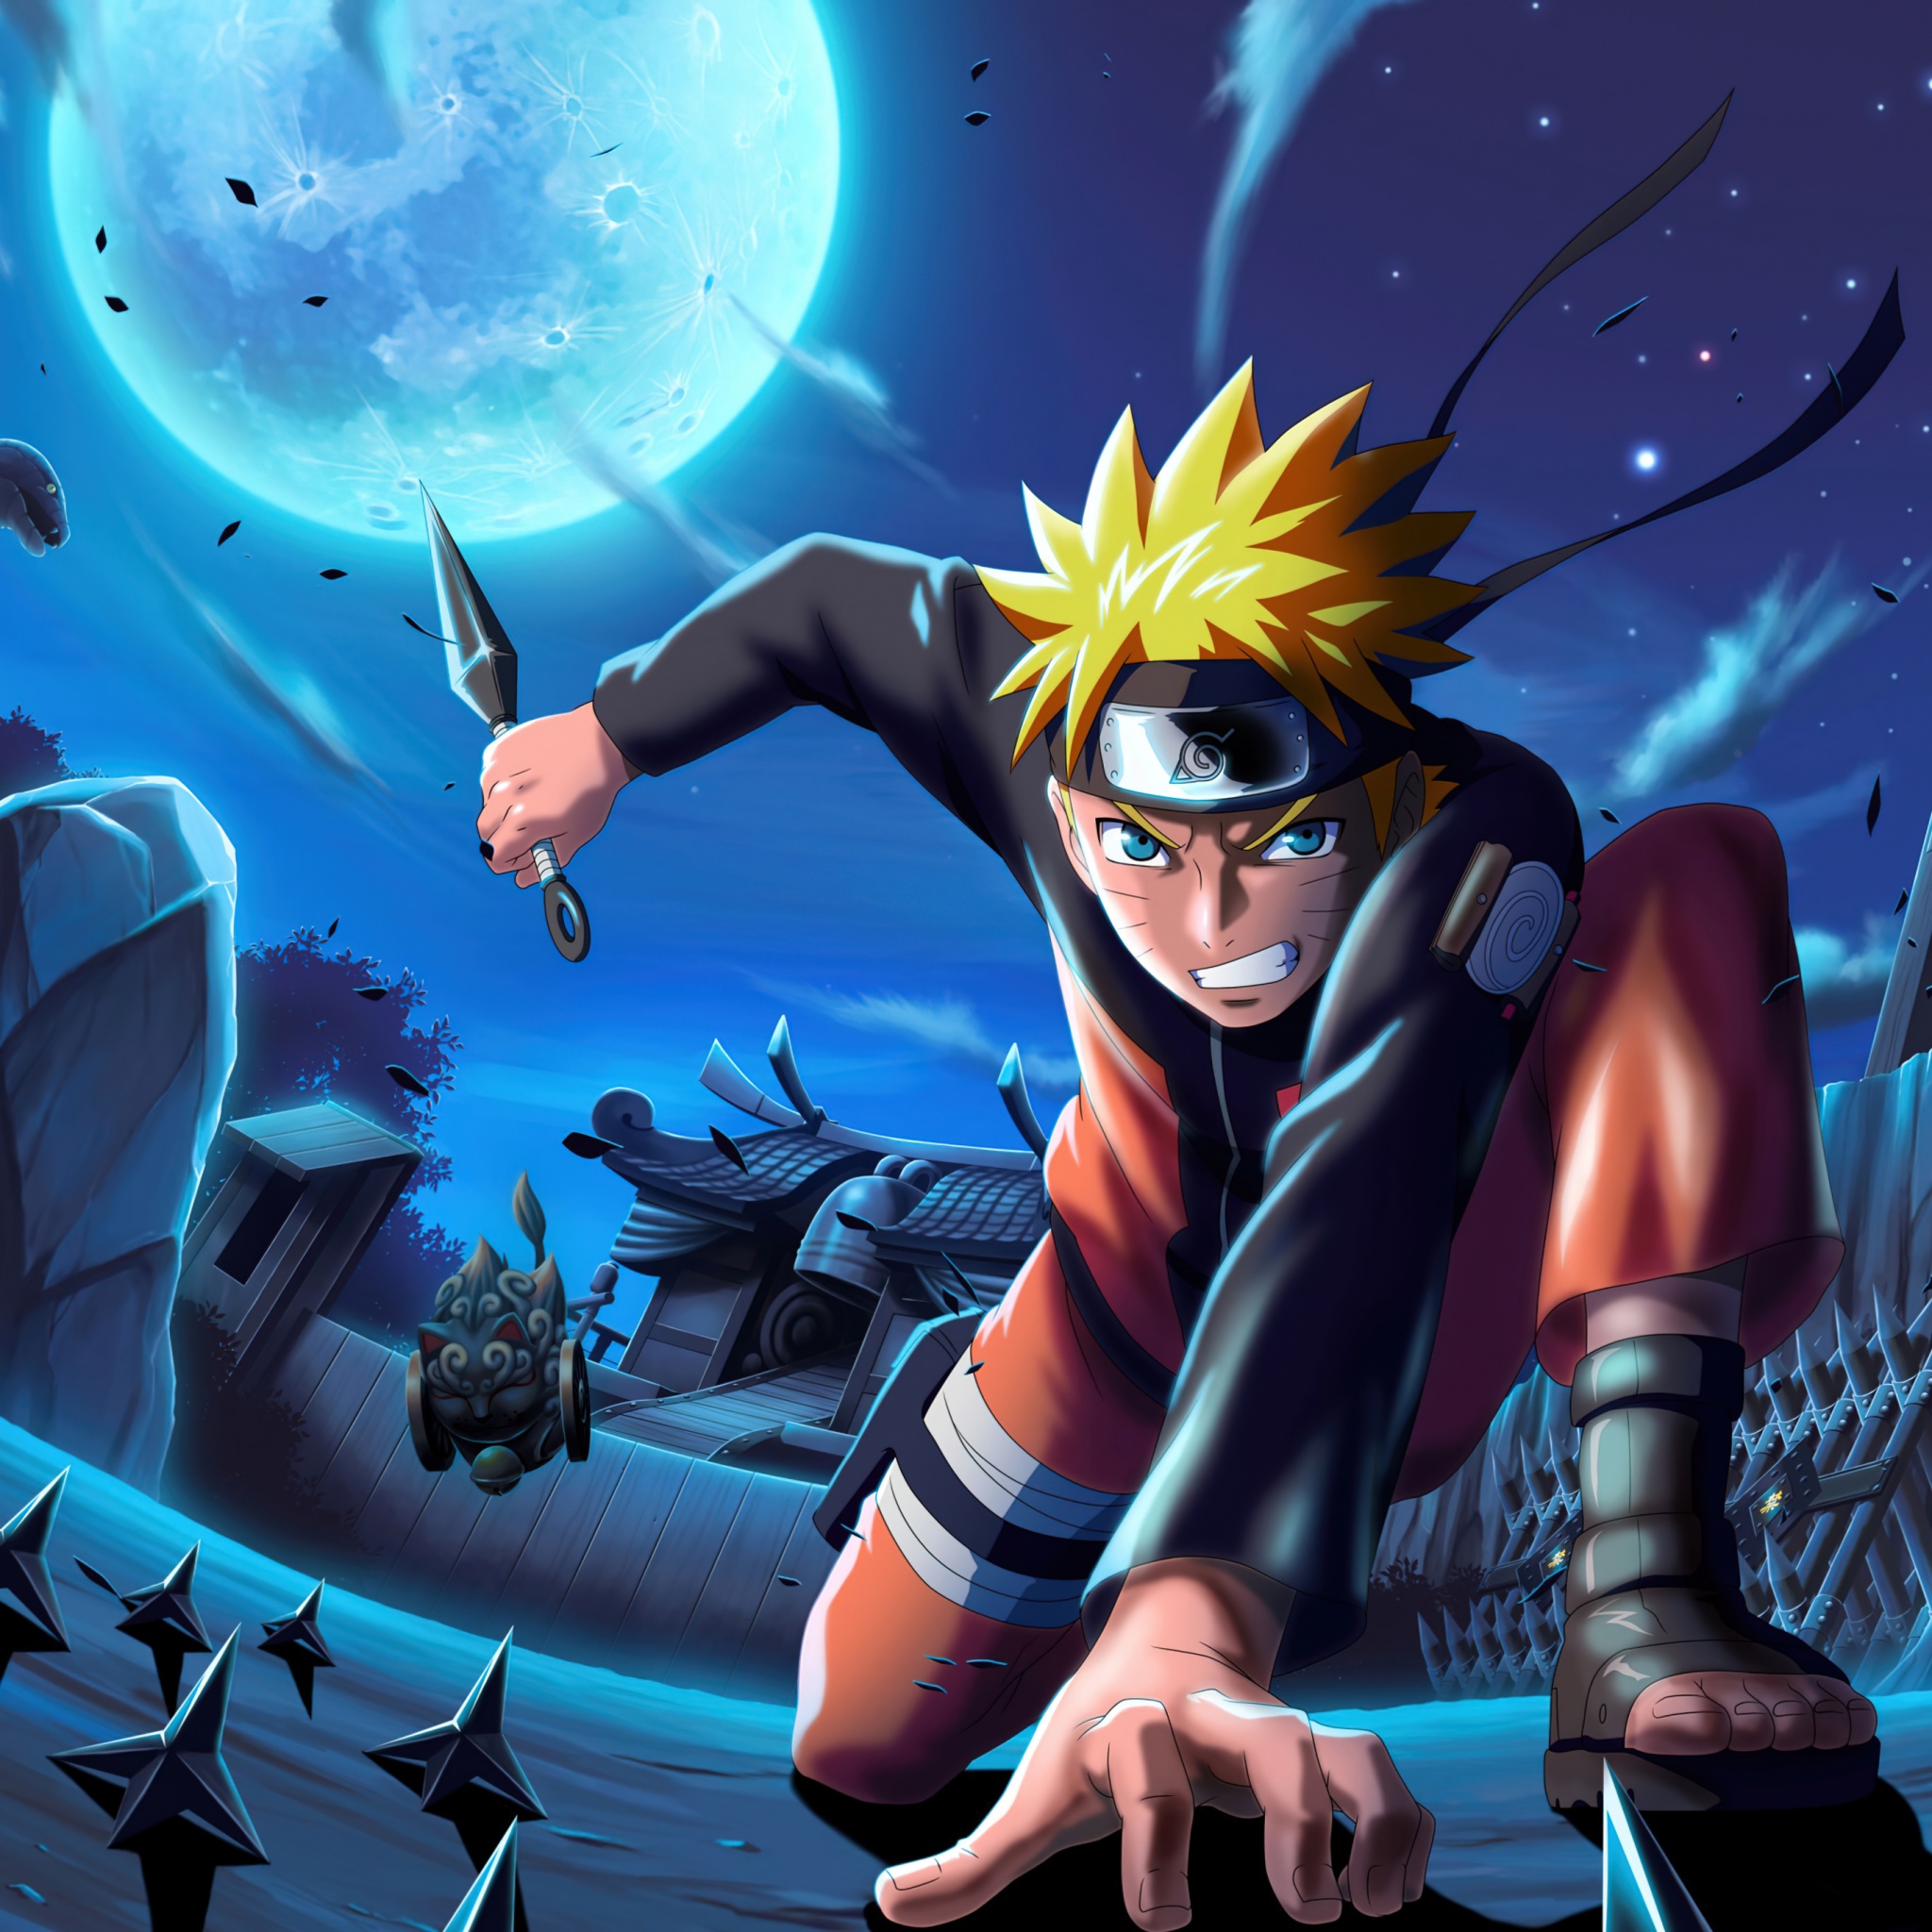 Naruto Uzumaki luôn là một trong những nhân vật được yêu thích nhất trong loạt manga và anime nổi tiếng này. Hãy cùng thưởng thức những bức ảnh nền Naruto với hình ảnh đầy cá tính và tình cảm của Uzumaki Naruto.